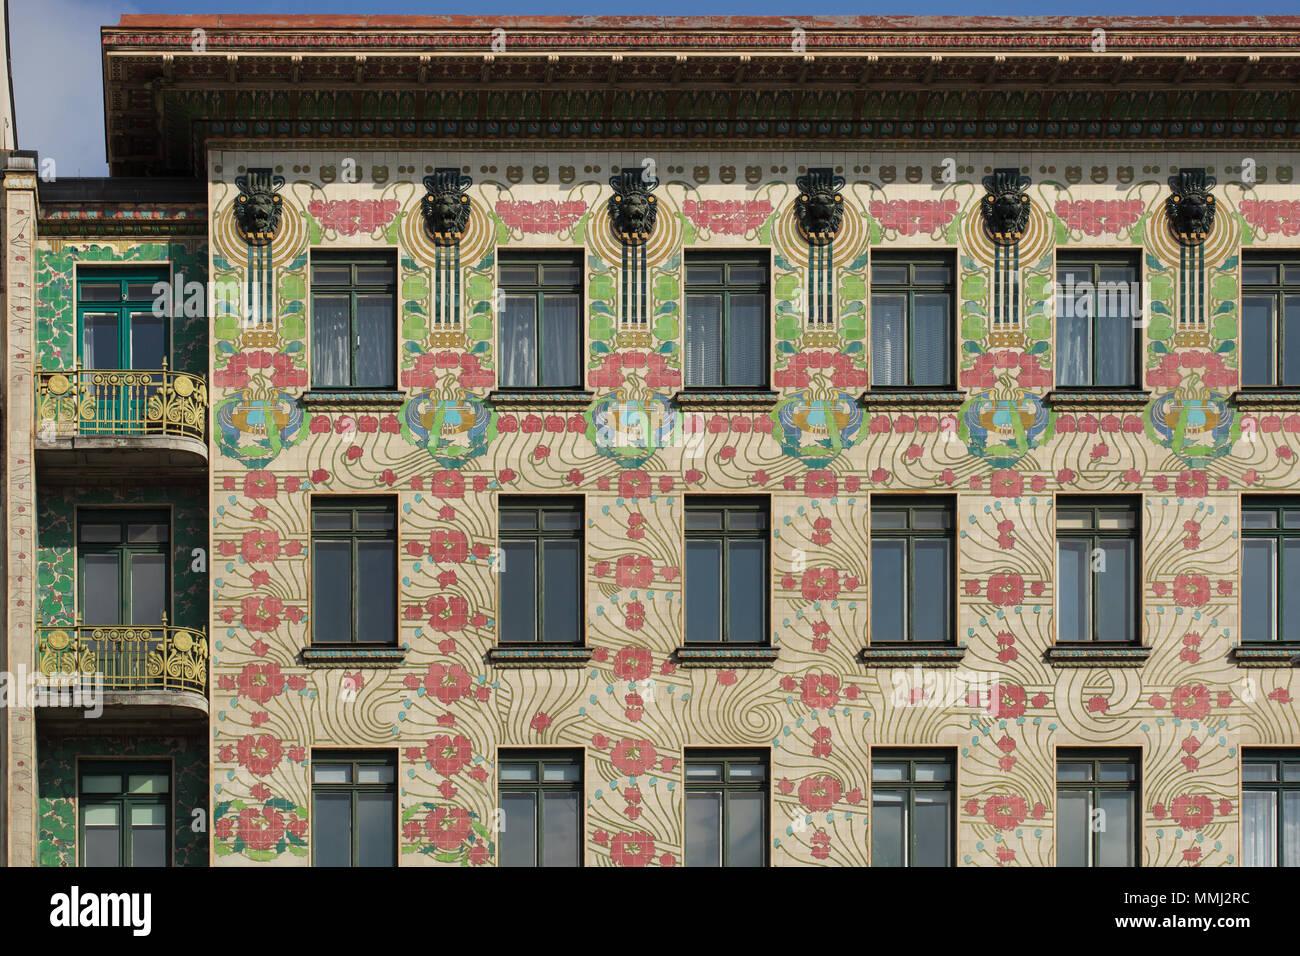 Majolikahaus (maiolica Casa) progettata dall austriaco modernista architetto Otto Wagner e costruito nel 1898 in Linke Wienzeile 40 di Vienna in Austria. La maiolica decorazione floreale è stato progettato dall'architetto austriaco Alois Ludwig. Foto Stock